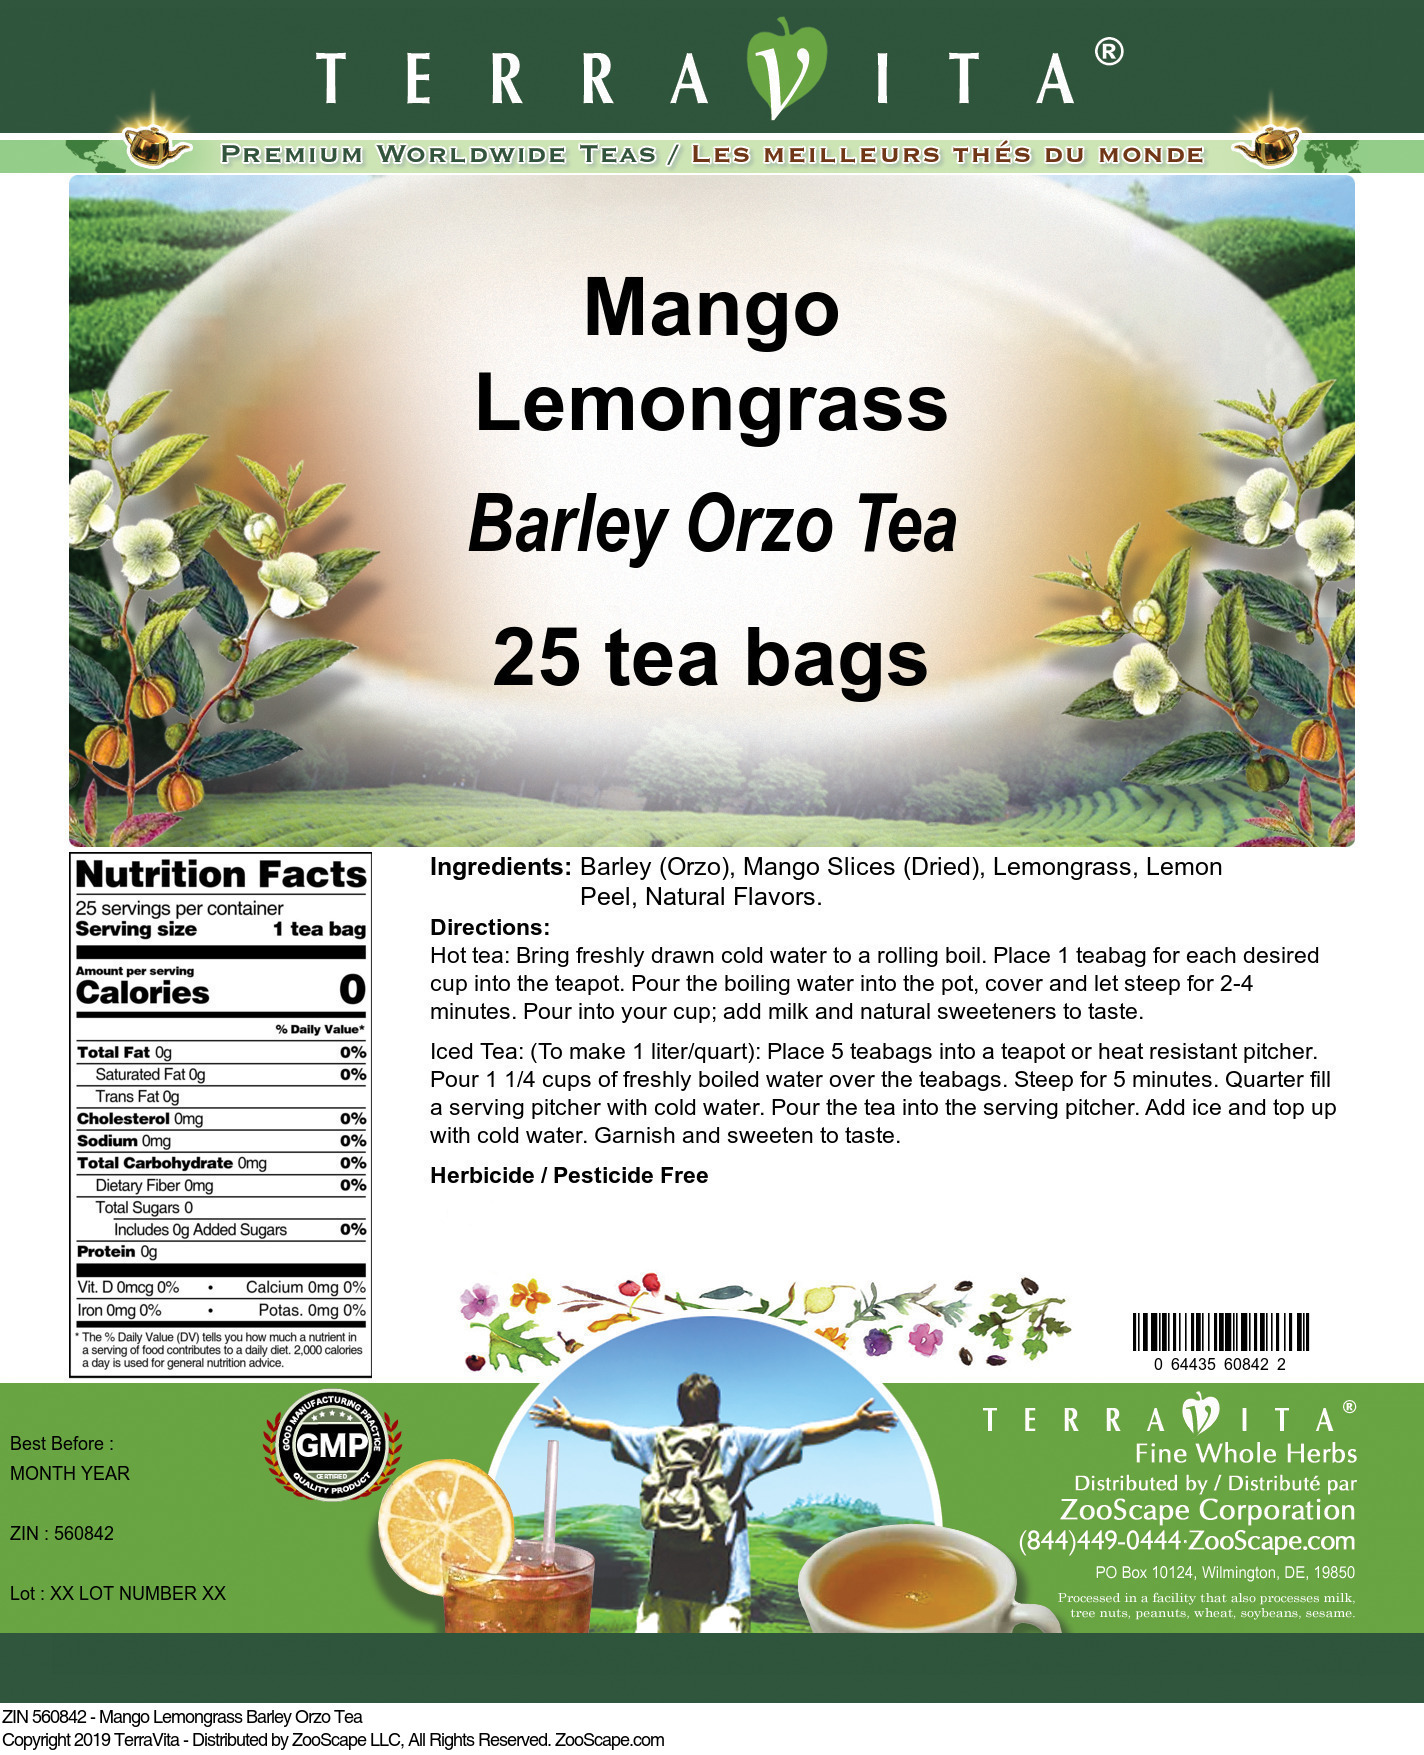 Mango Lemongrass Barley Orzo Tea - Label